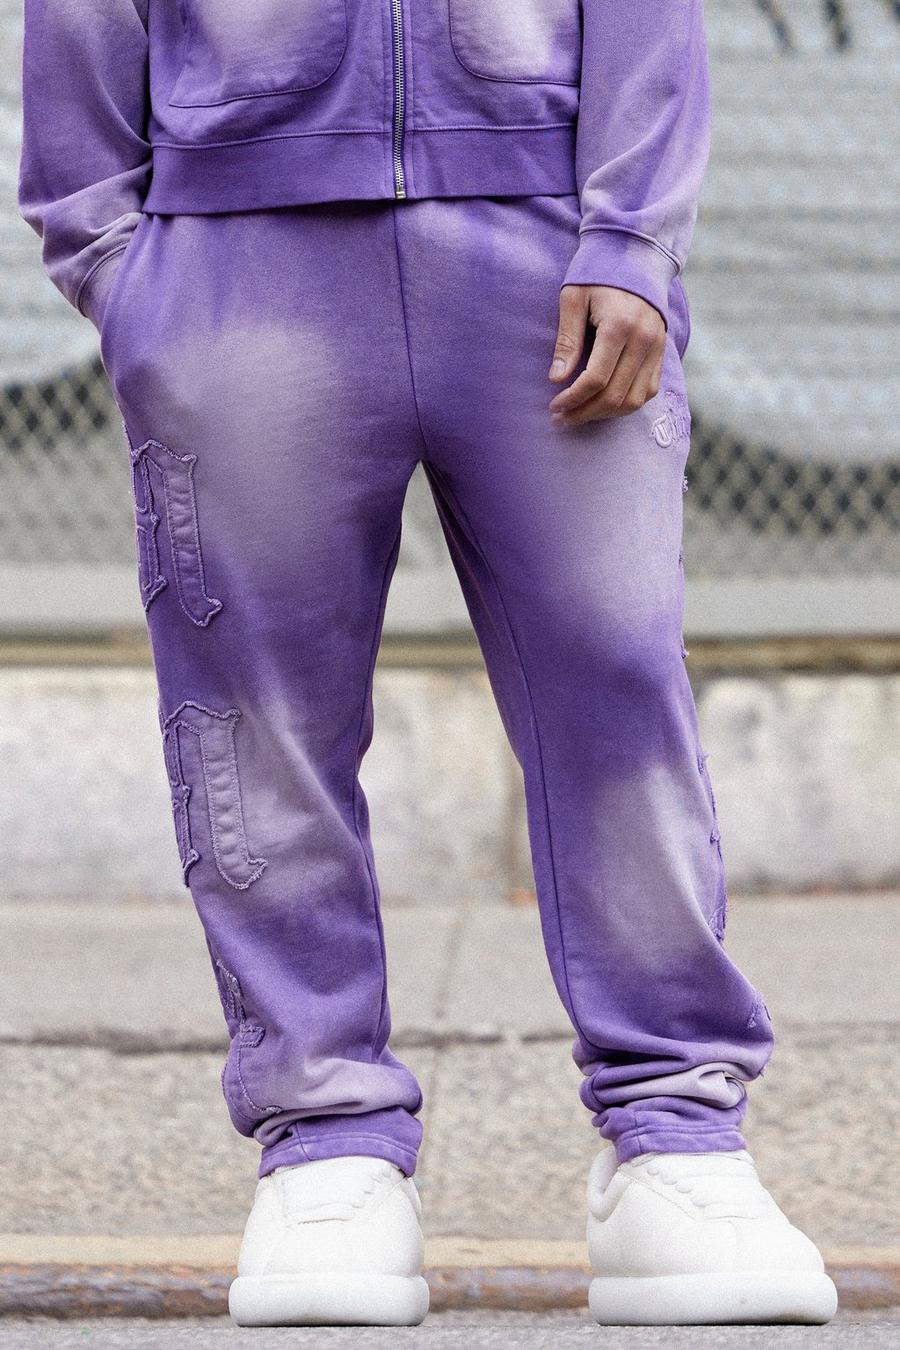 Pantaloni tuta oversize candeggiati con sole 13 inserti, Purple